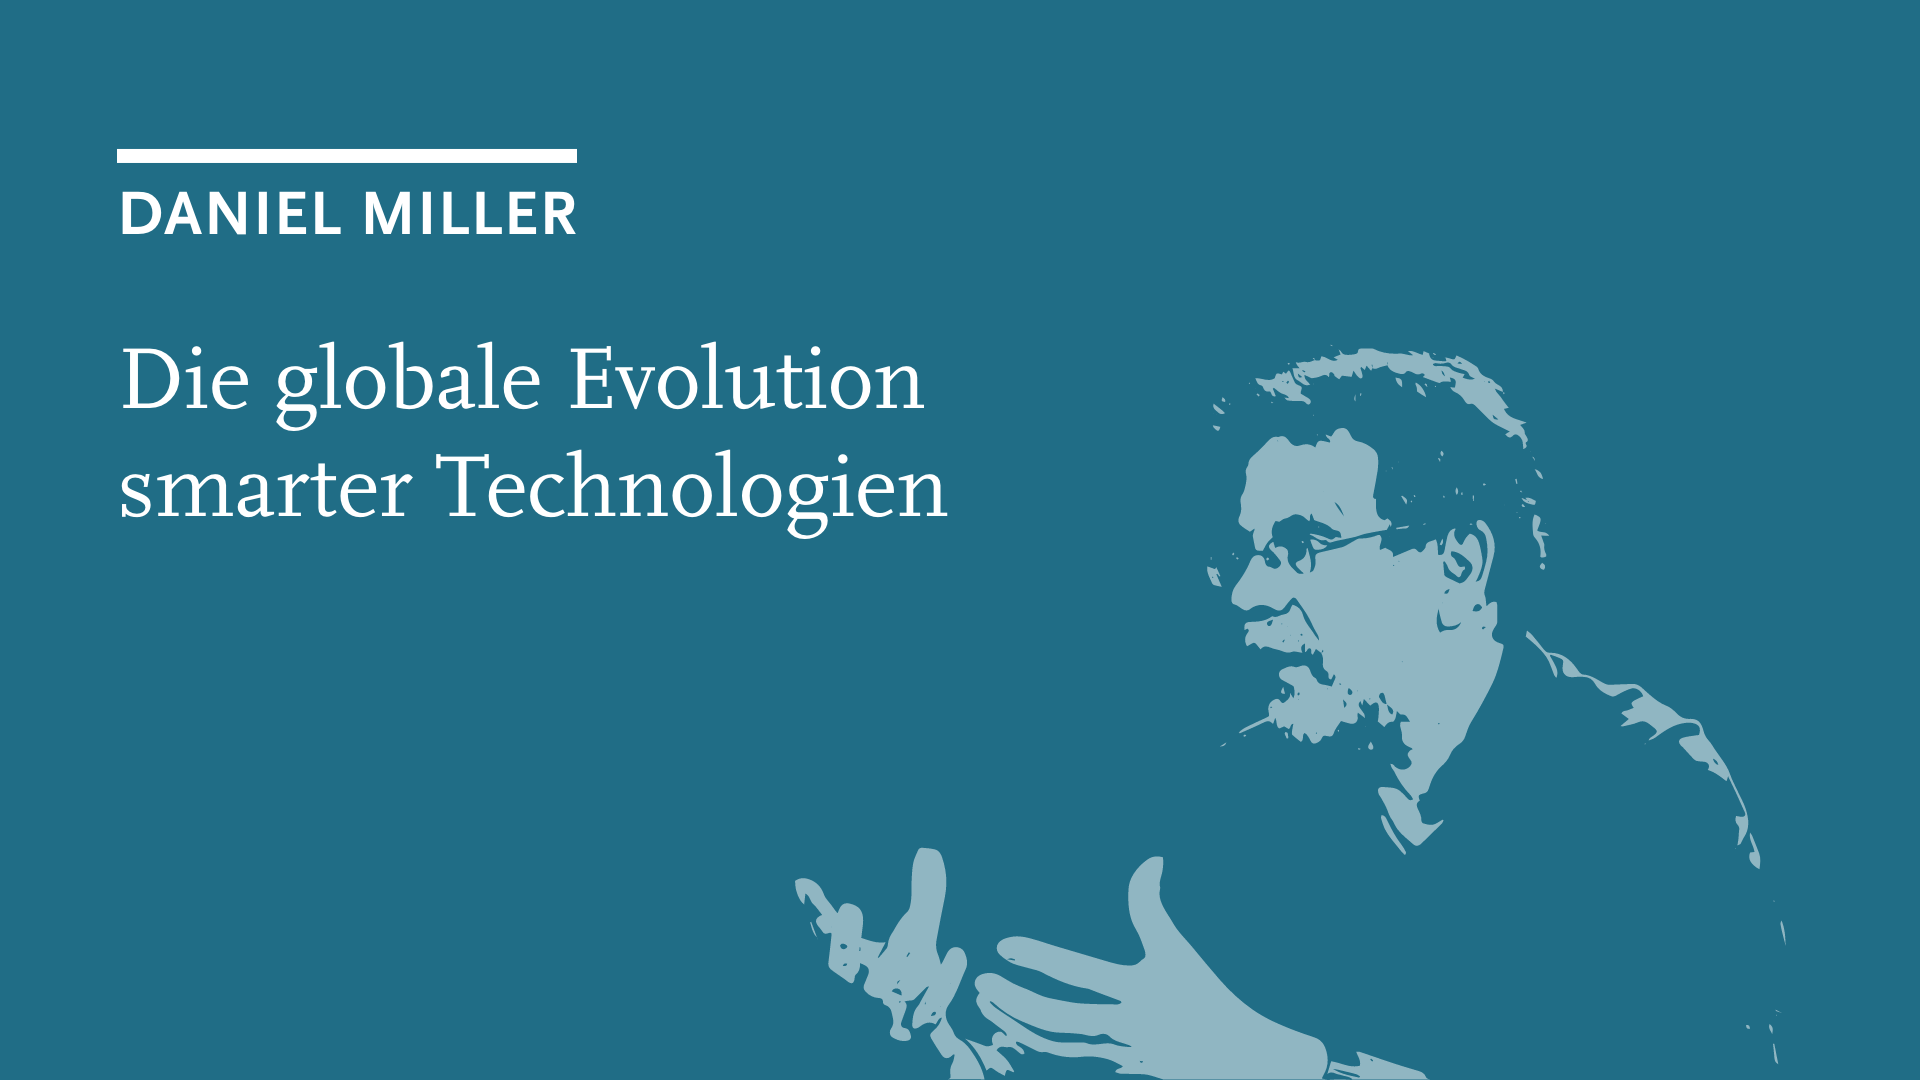 Daniel Miller: Die globale Evolution smarter Technologien